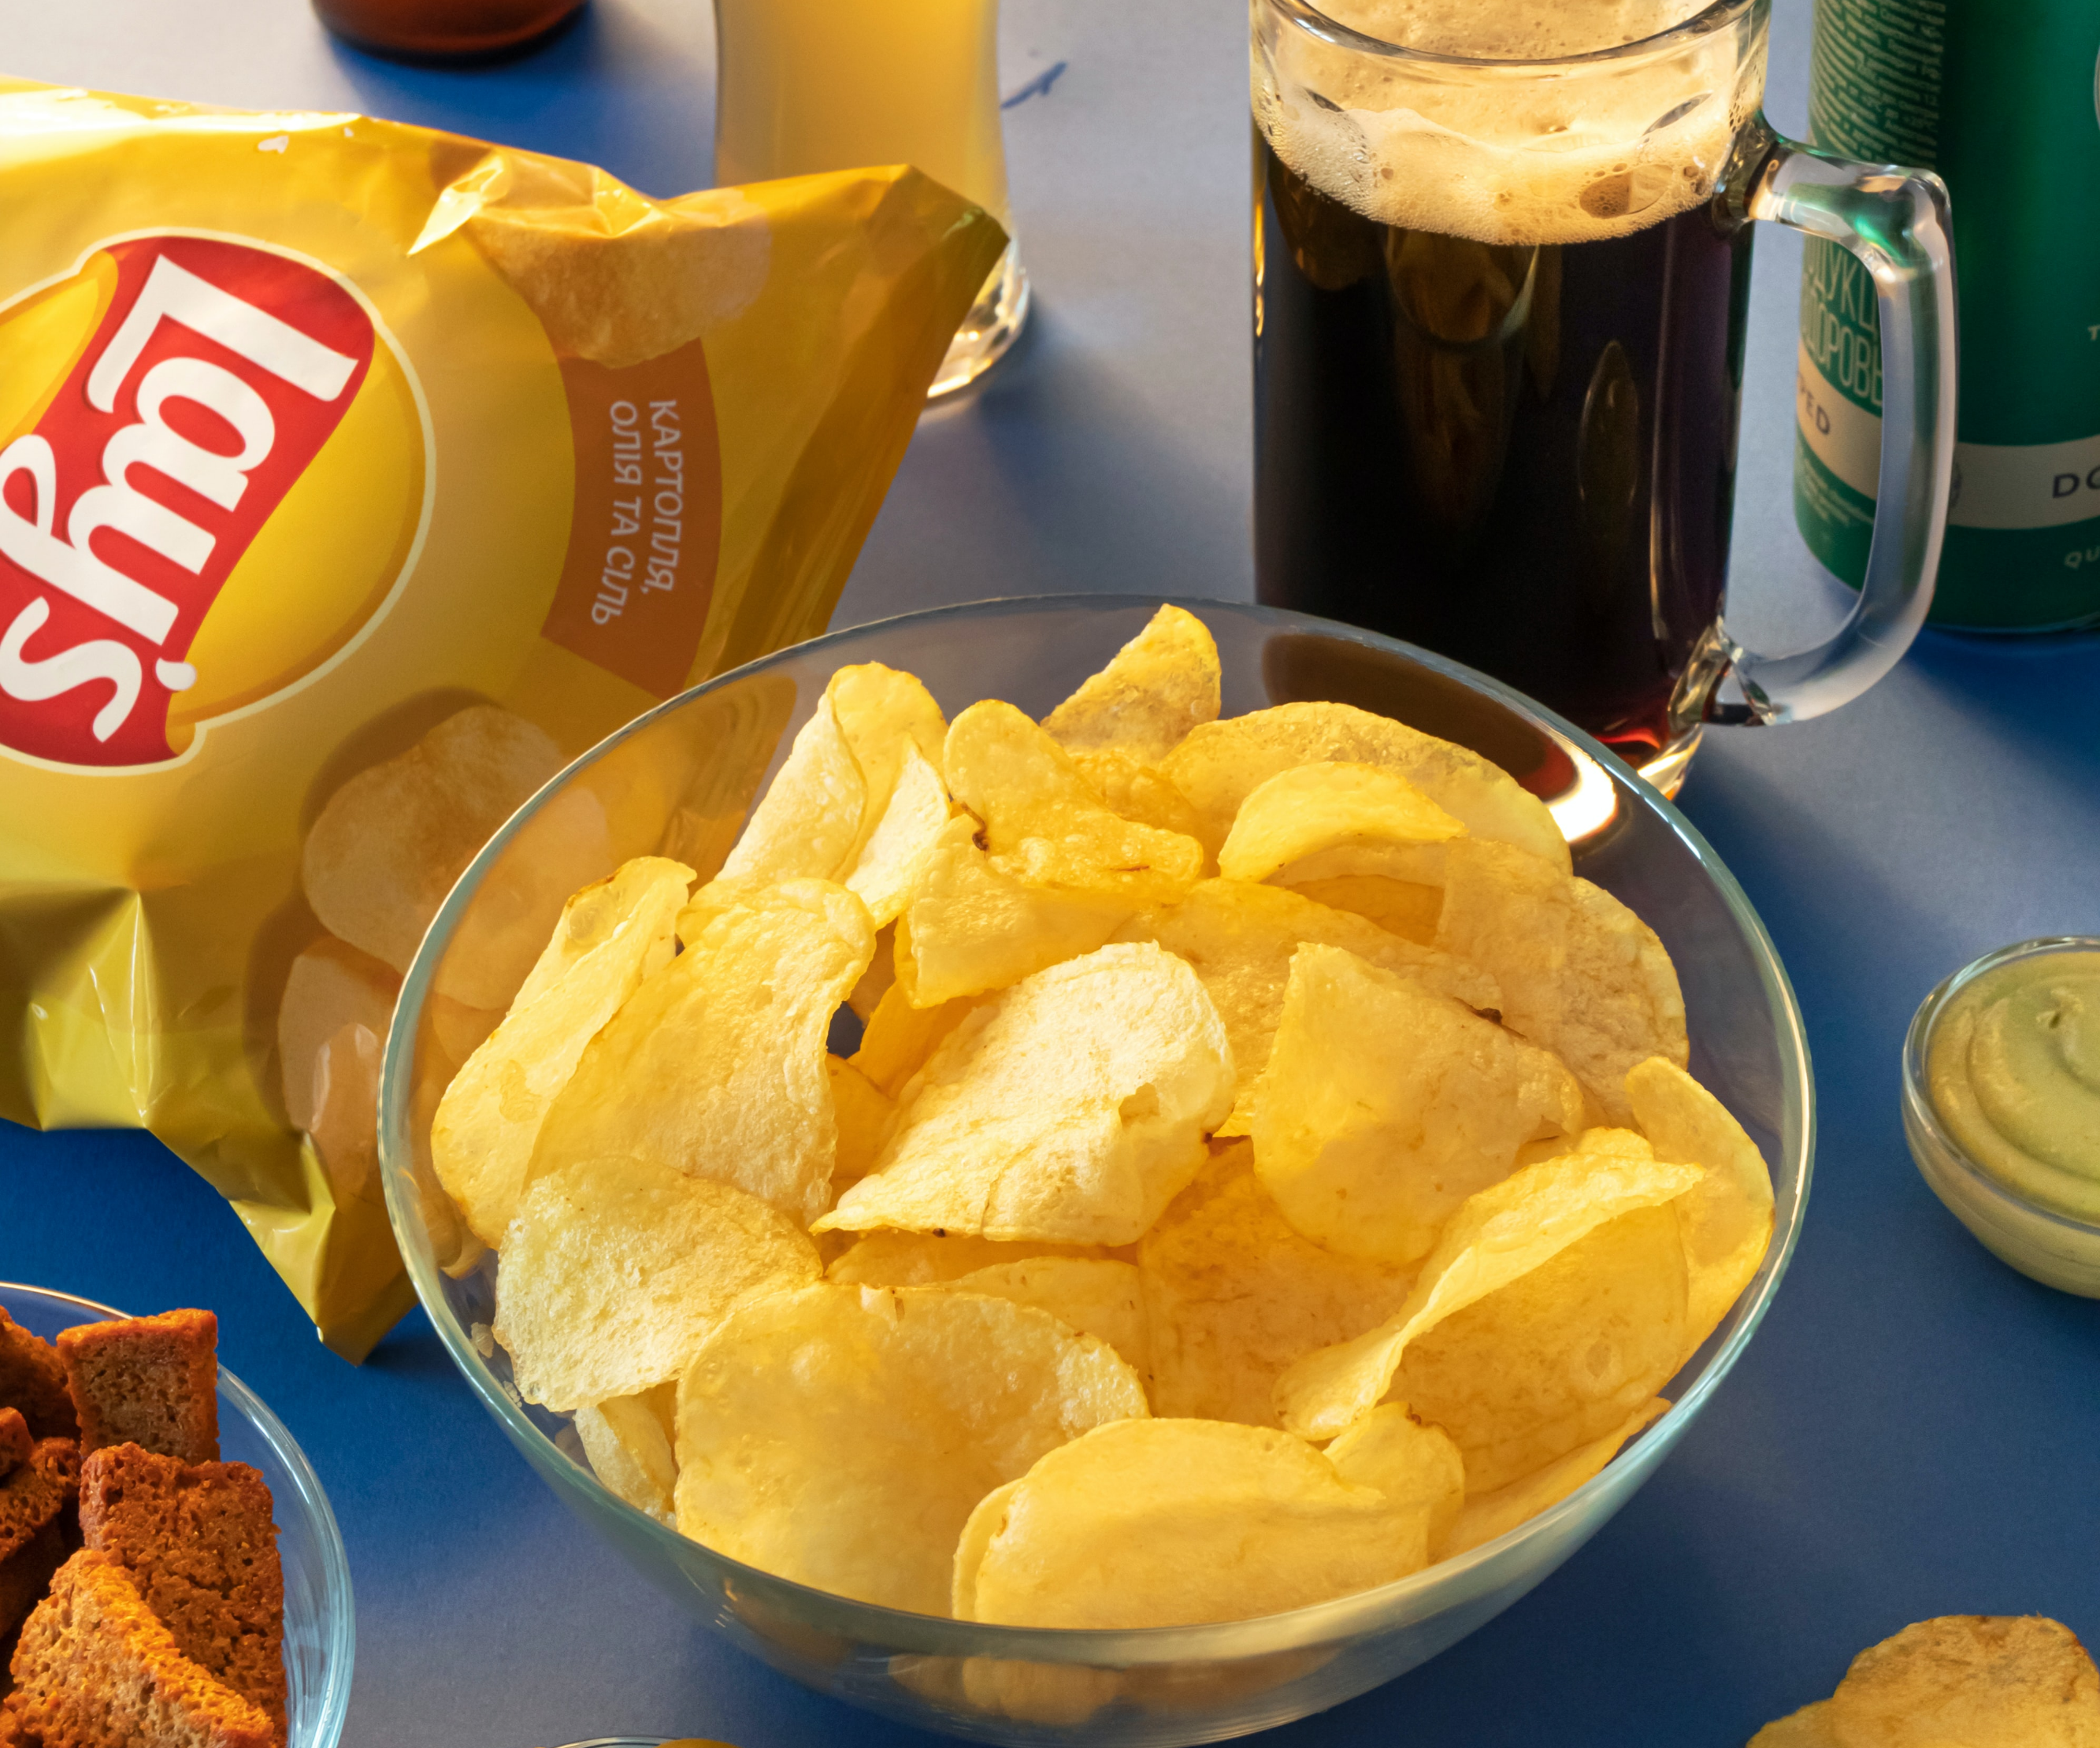 Des chips Lay's dans un bol.